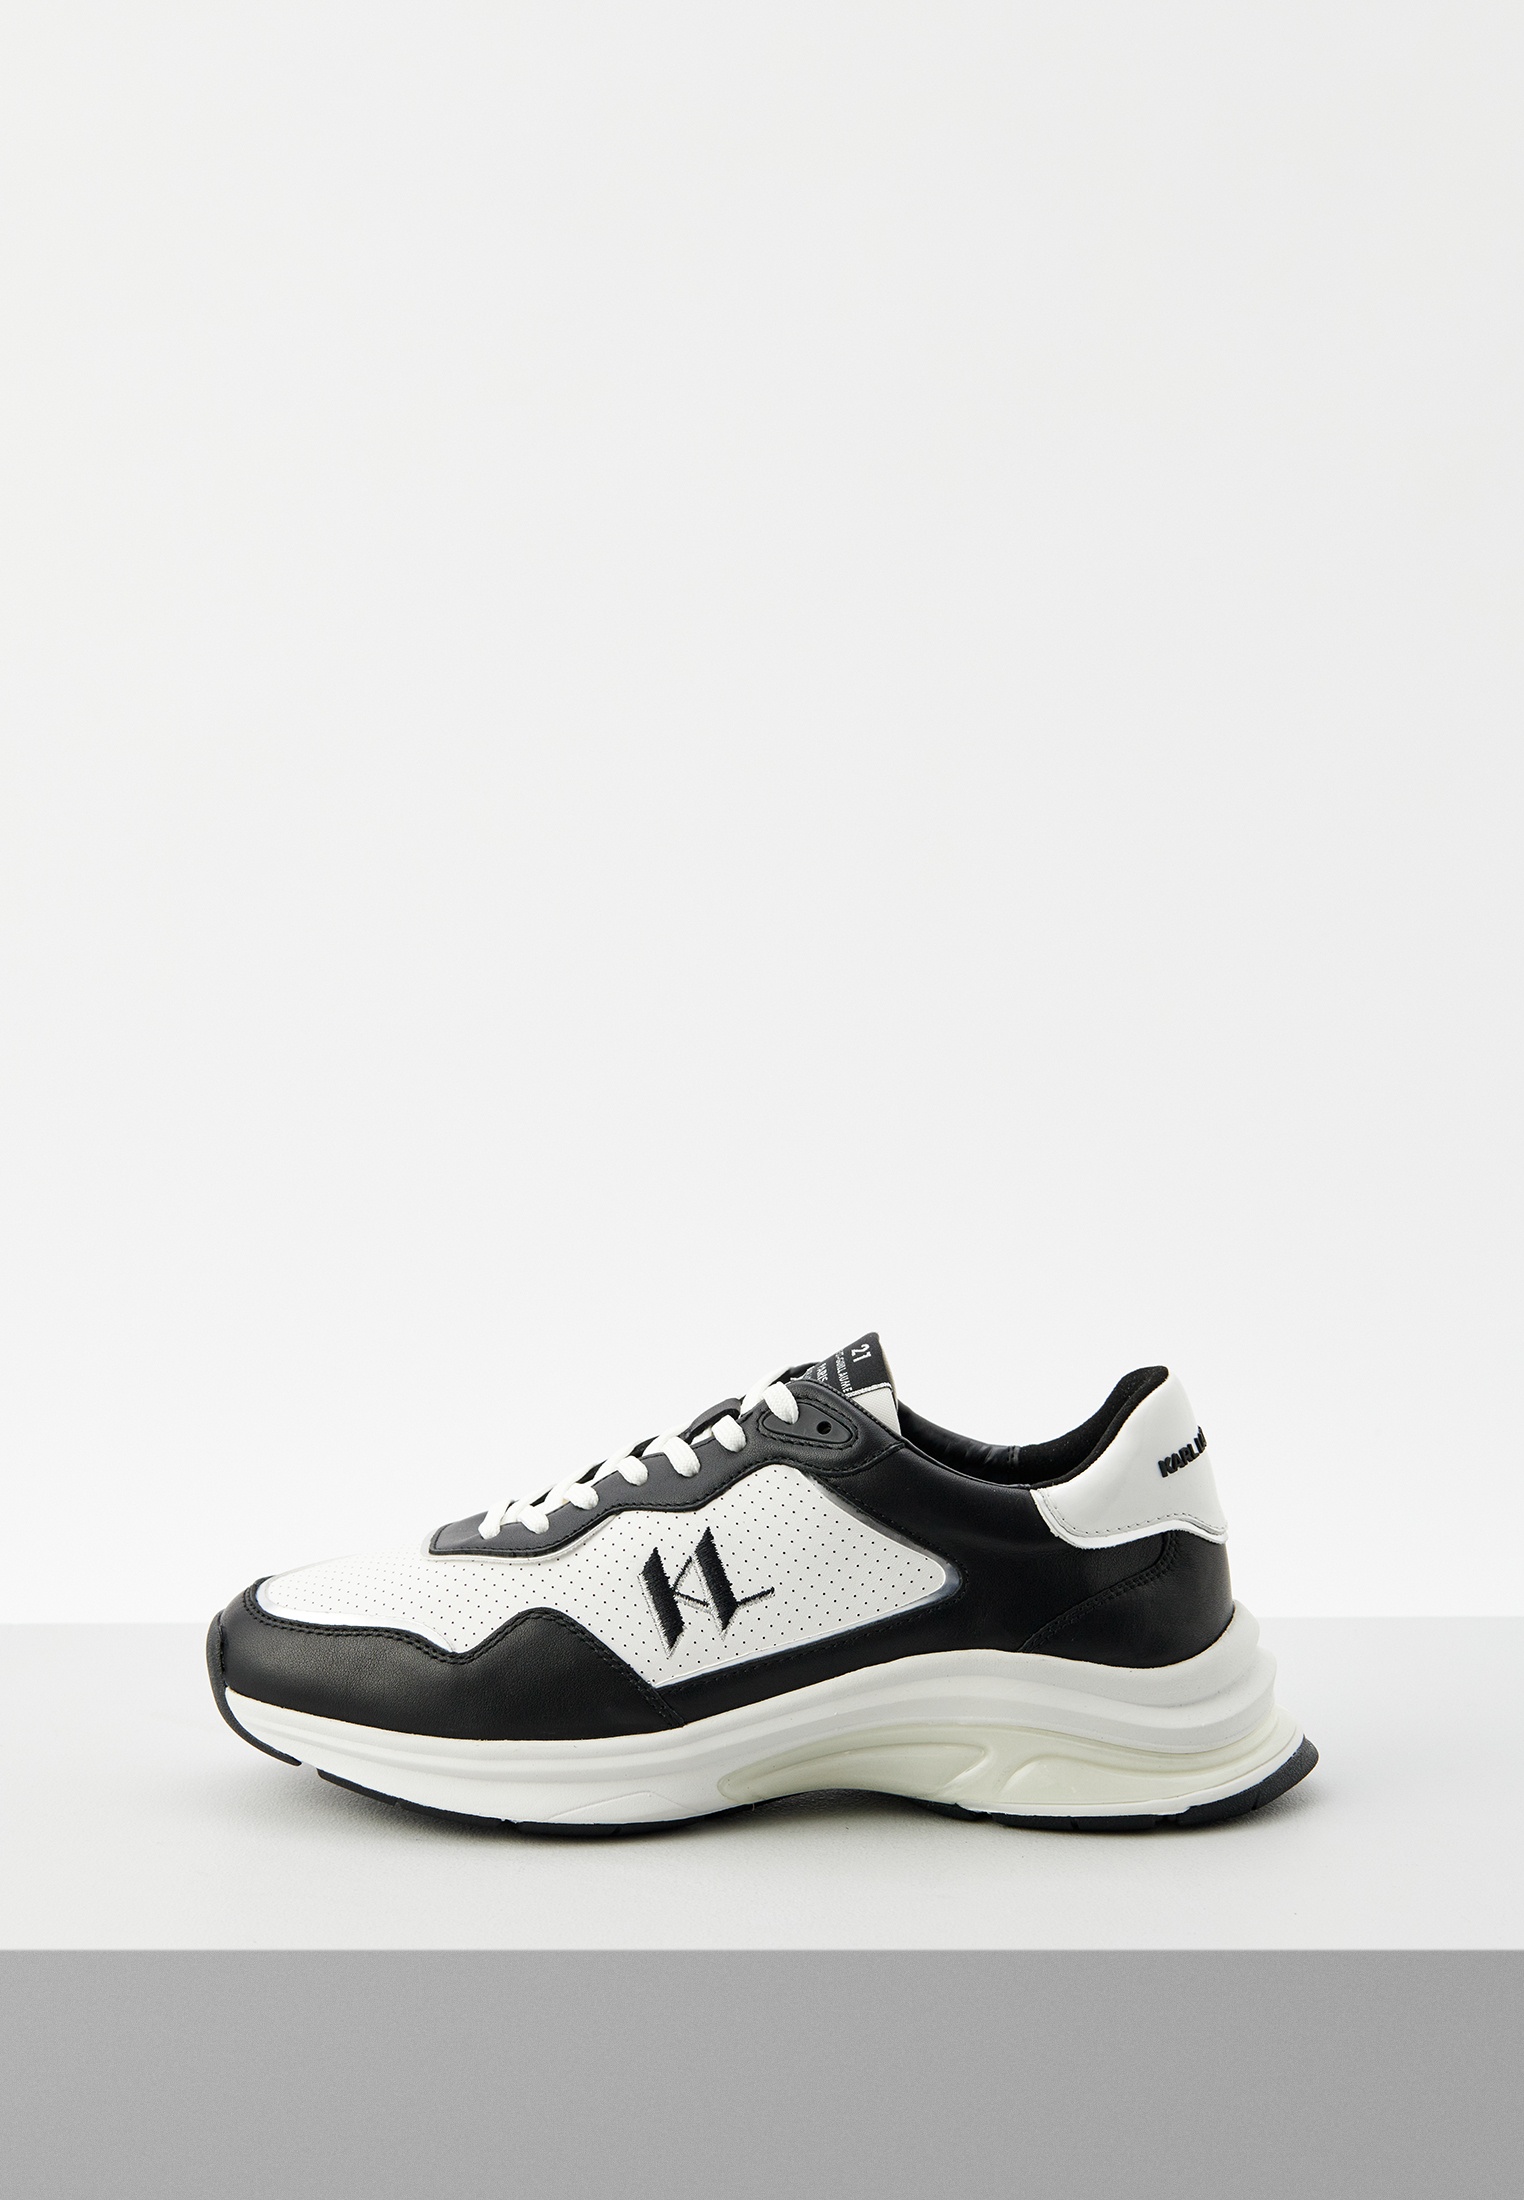 Мужские кроссовки Karl Lagerfeld (Карл Лагерфельд) 855018-541471: изображение 1